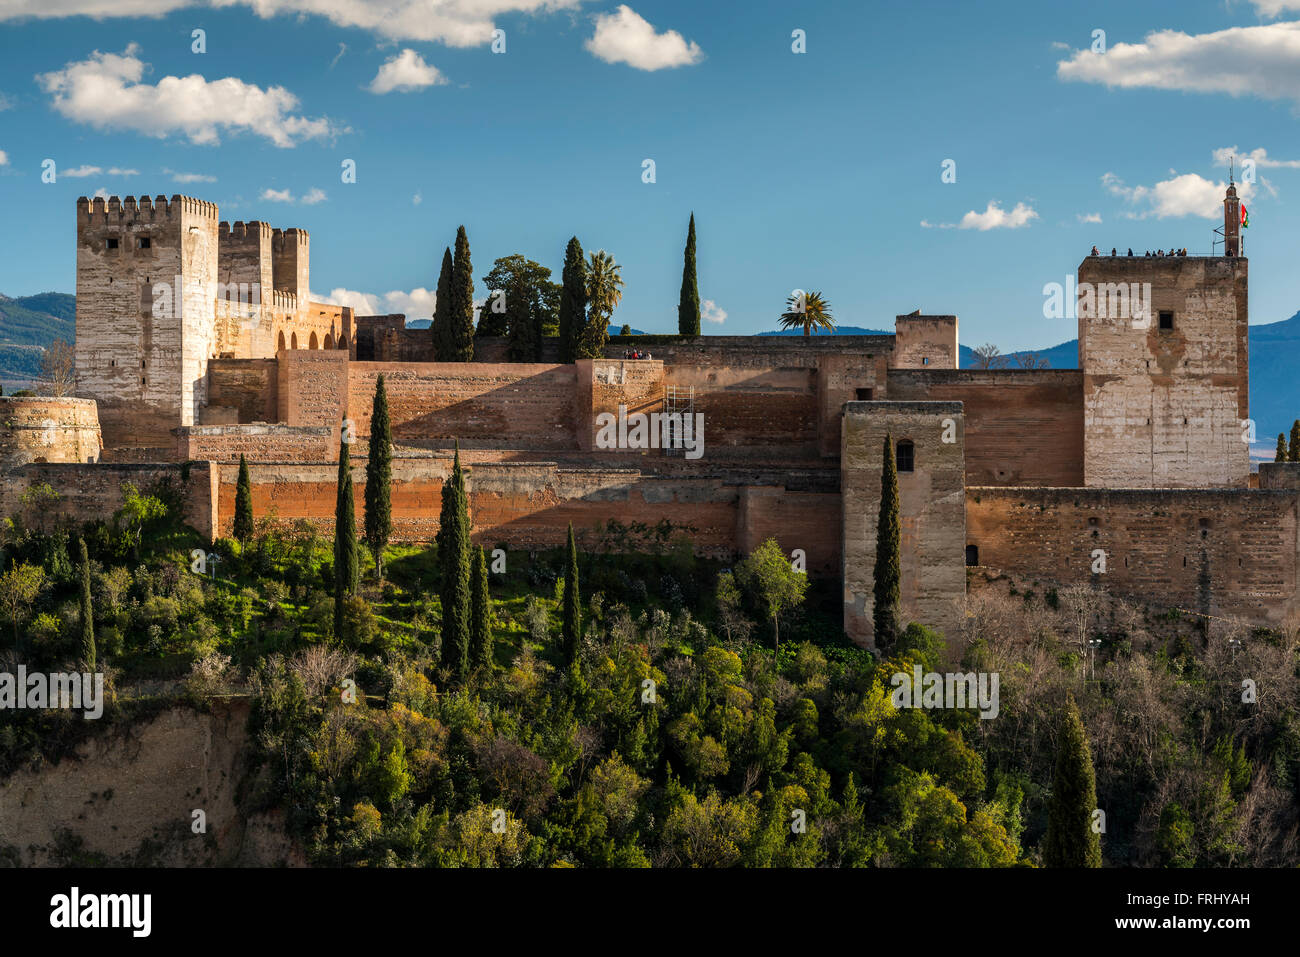 Forteresse Alcazaba, palais de l'Alhambra, Grenade, Andalousie, Espagne Banque D'Images